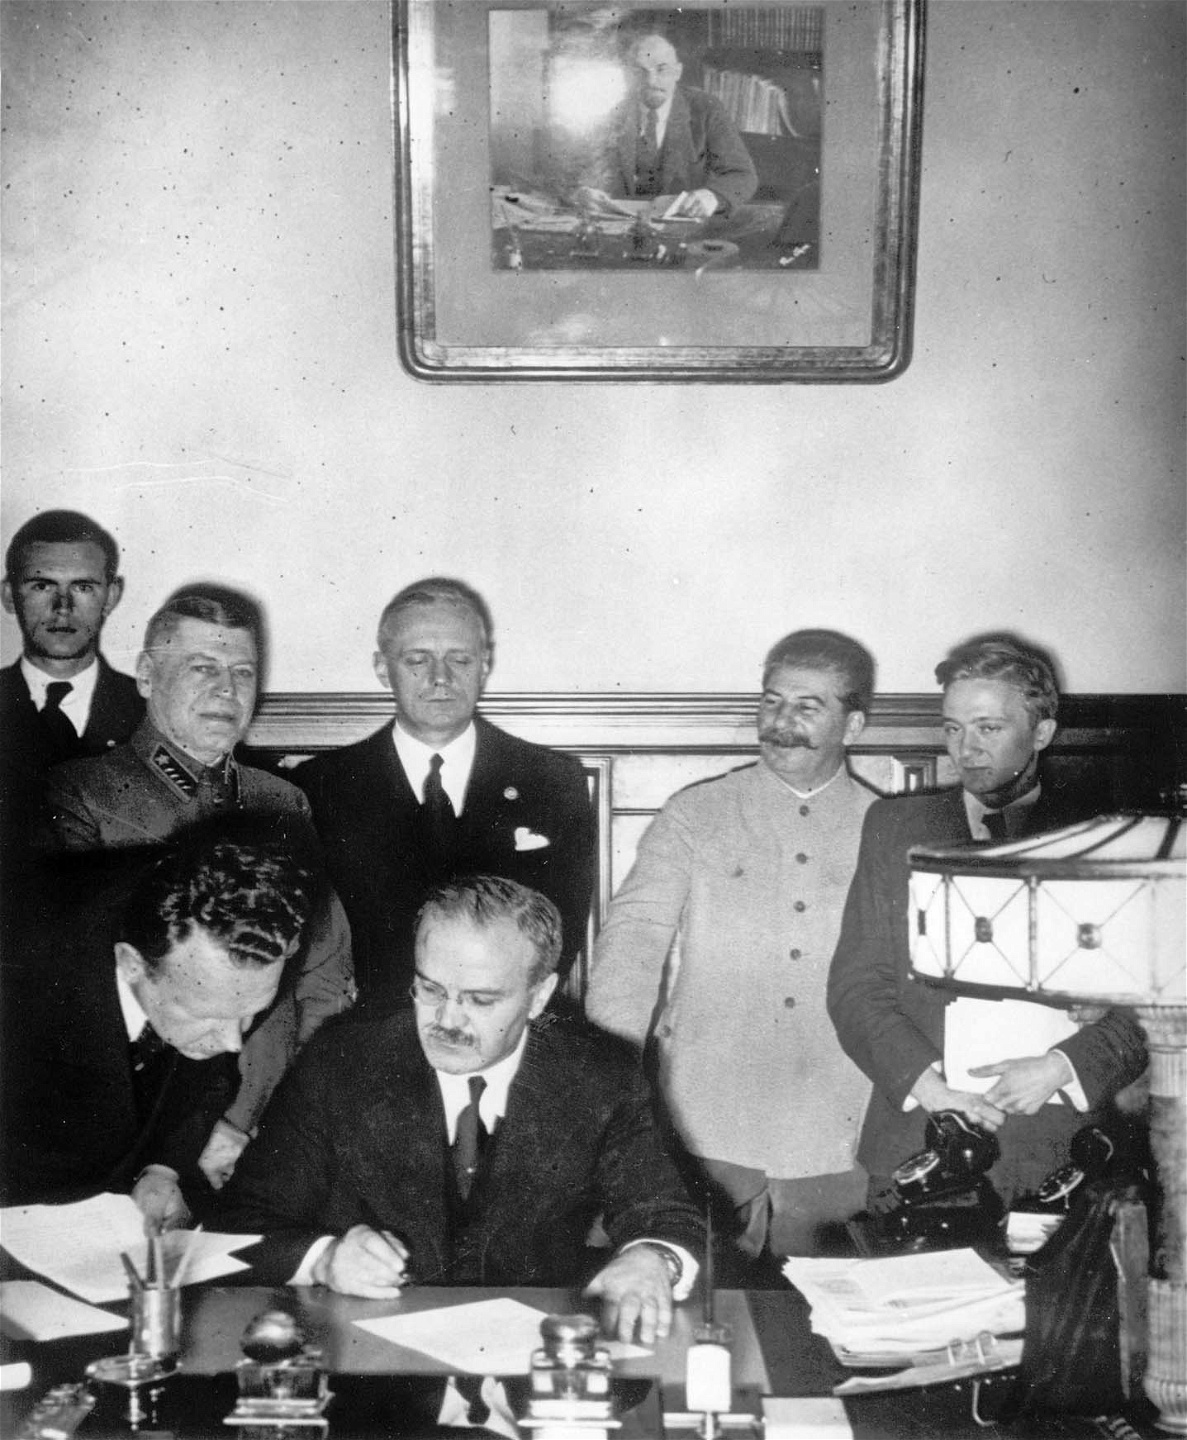 Sovjetunionens utrikesminister Molotov undertecknar ickeaggressionspakten
mellan Tyskland och Sovjetunionen den 23 augusti 1939, ett par
dagar före utbrottet av andra världskriget. Bakom honom Tysklands
utrikesminister Joachim von Ribentrop längst till höger, och Stalin bredvid.